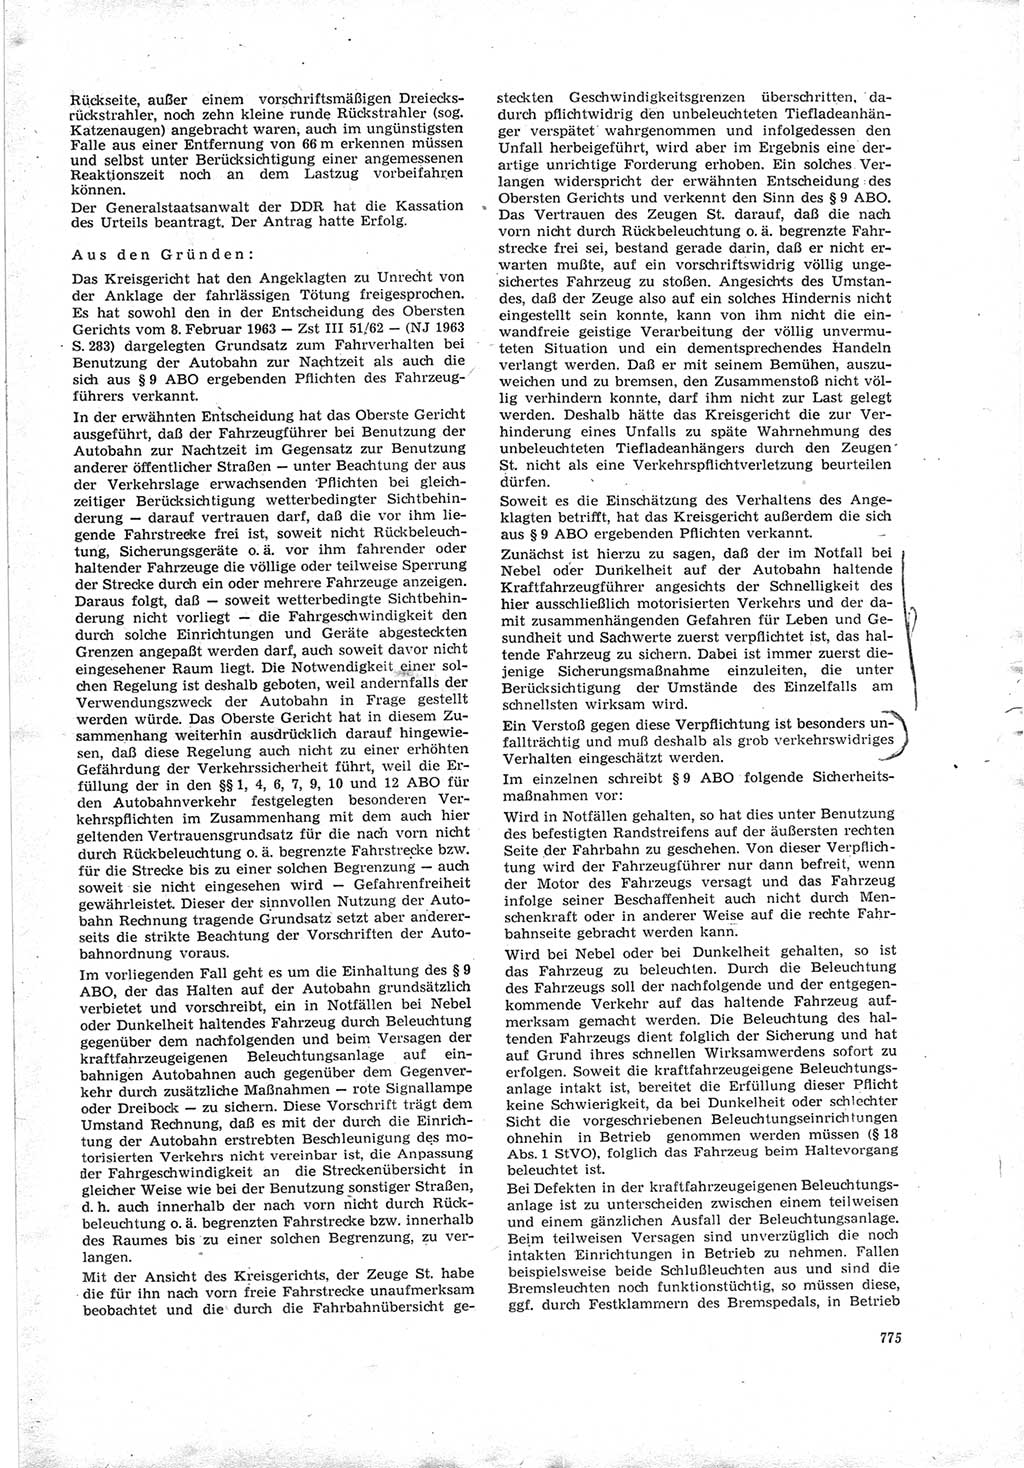 Neue Justiz (NJ), Zeitschrift für Recht und Rechtswissenschaft [Deutsche Demokratische Republik (DDR)], 19. Jahrgang 1965, Seite 775 (NJ DDR 1965, S. 775)